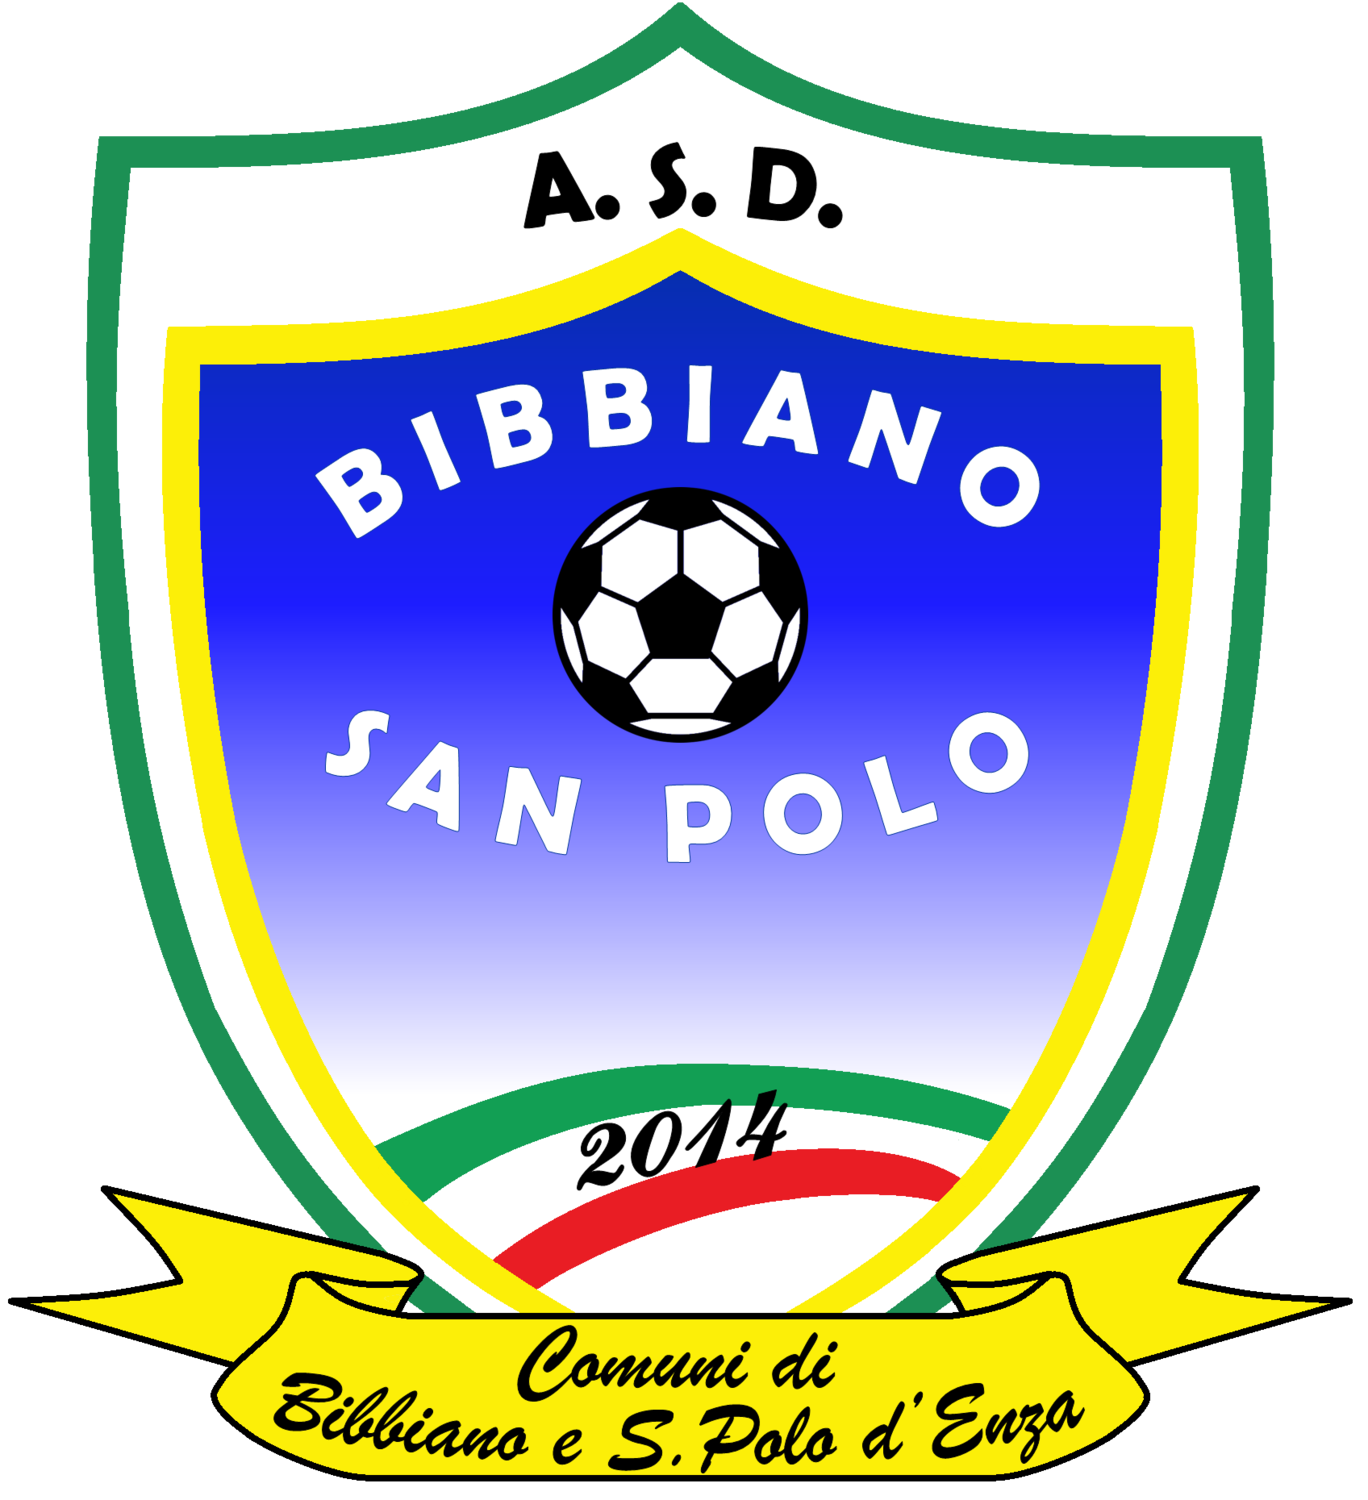 Wappen ASD Bibbiano San Polo diverse